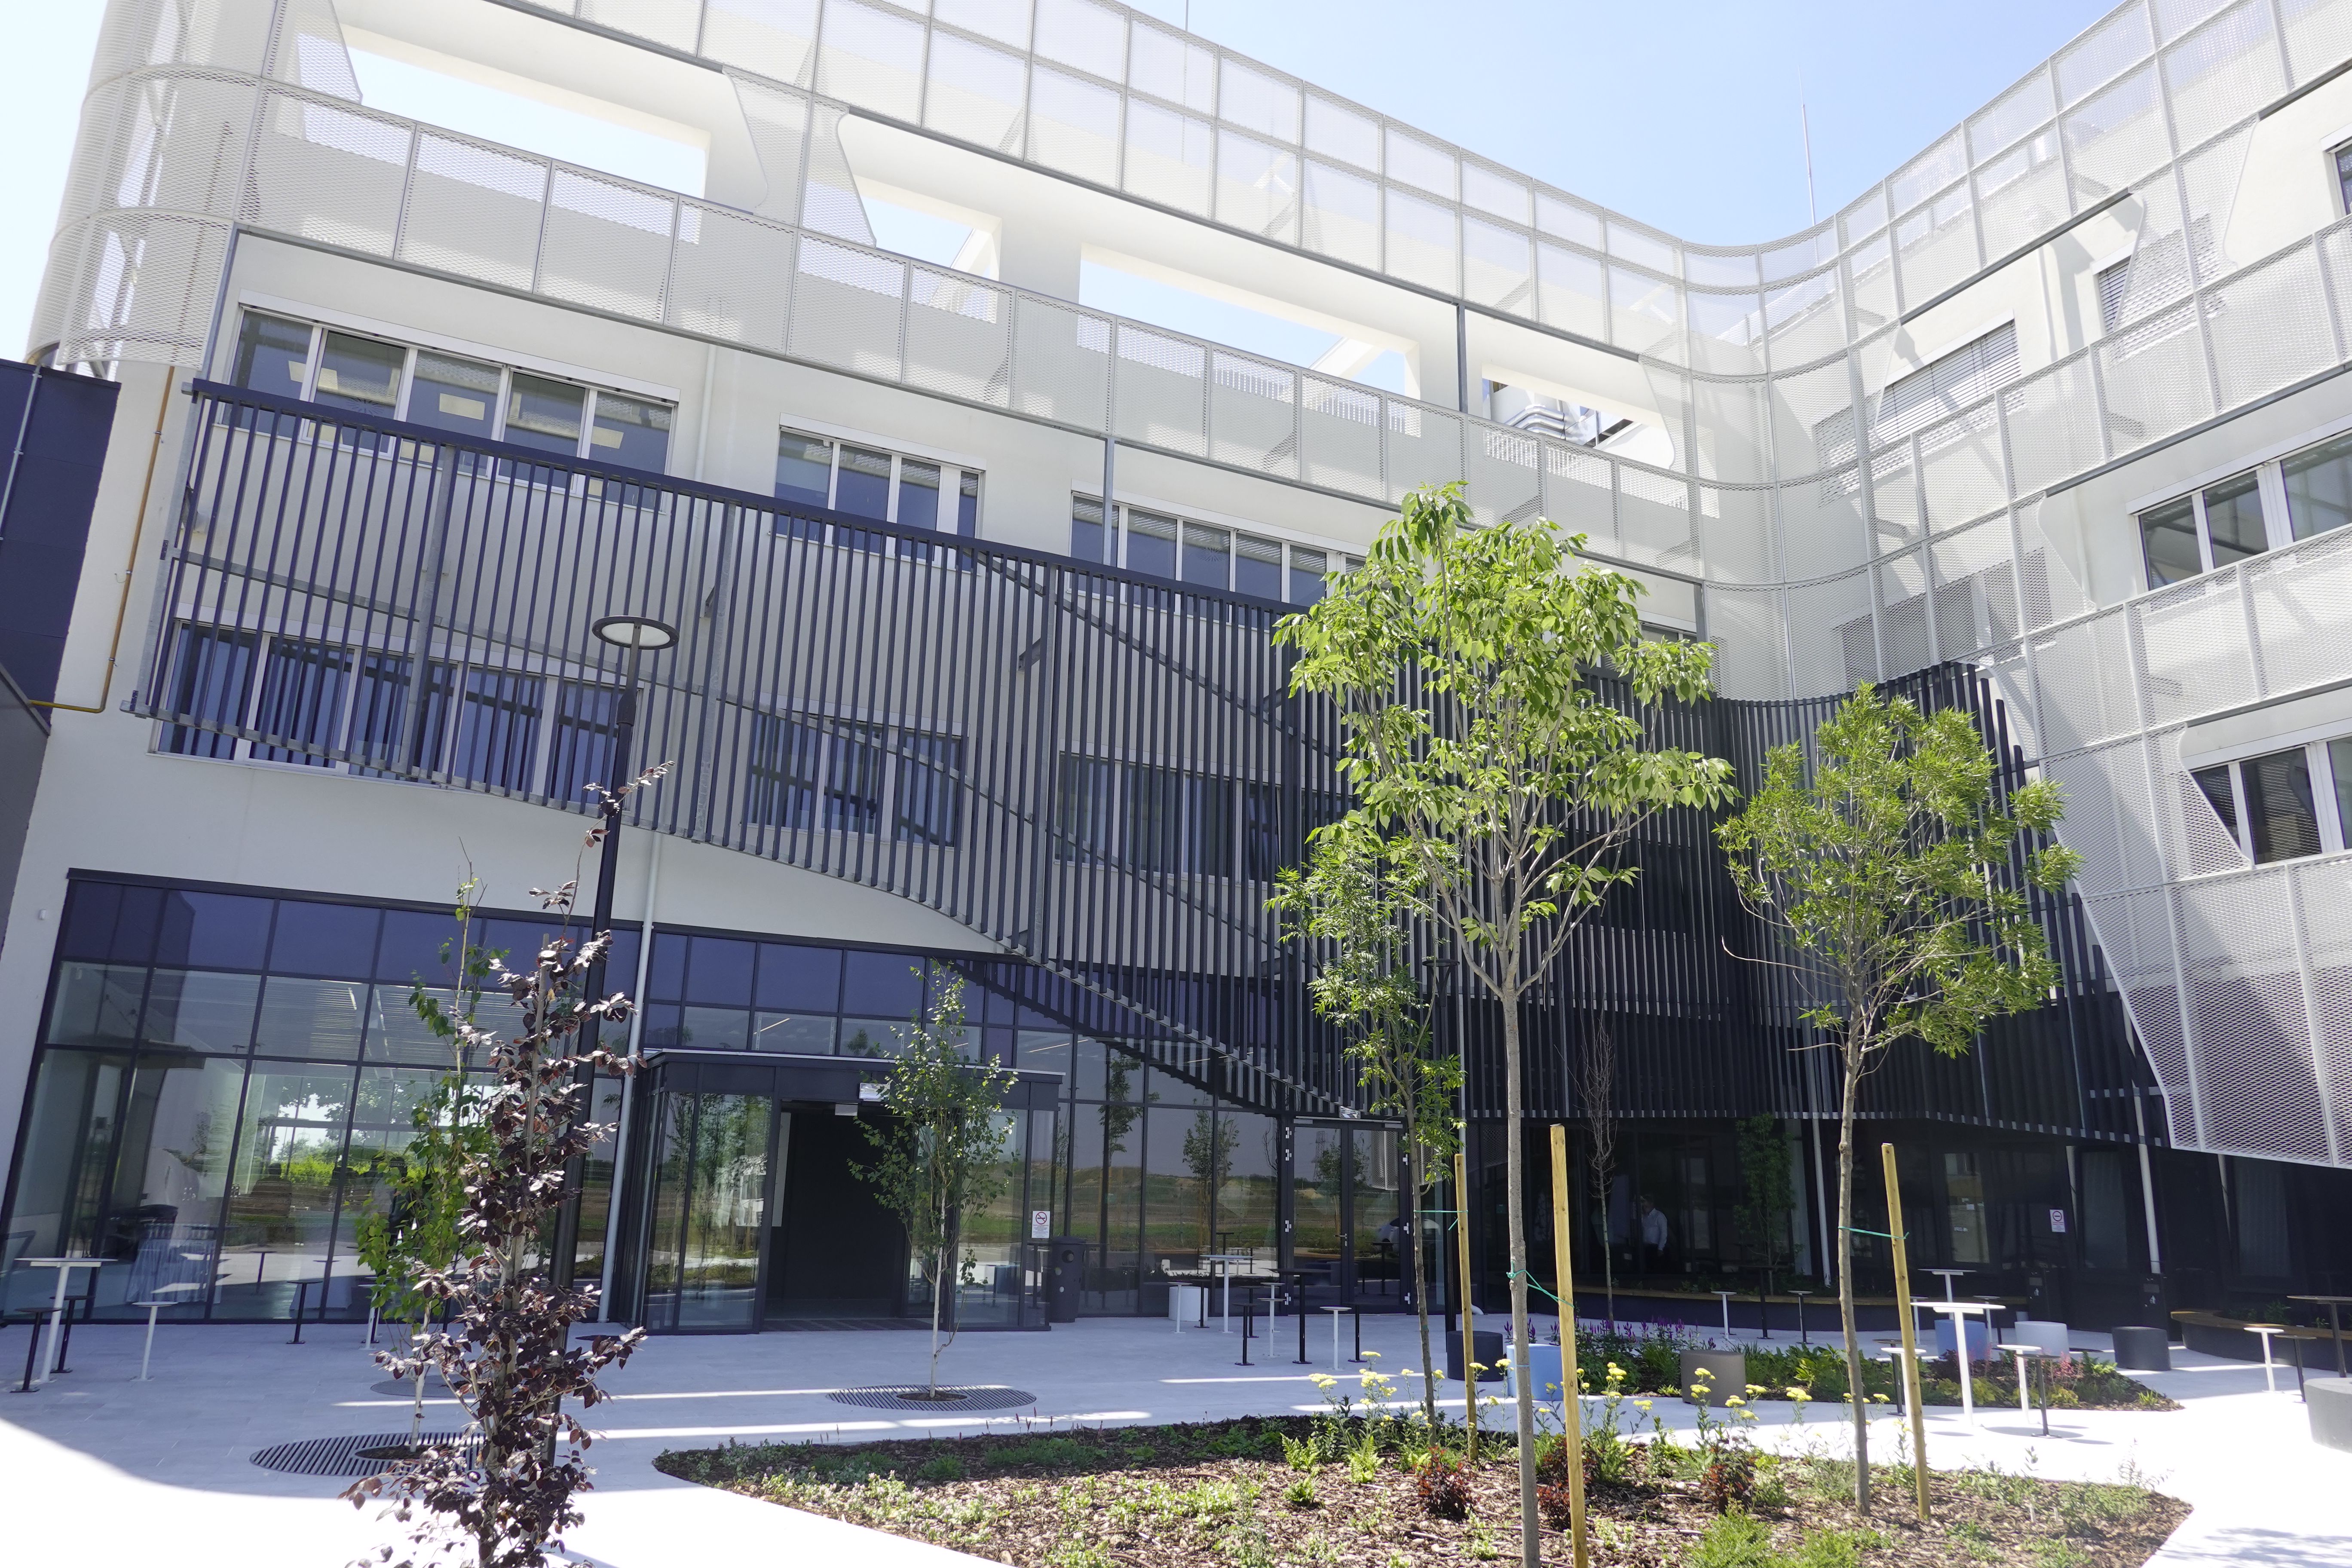  Otthon, kutatóközpont és gyártóhely a Debreceni Egyetem új épülete